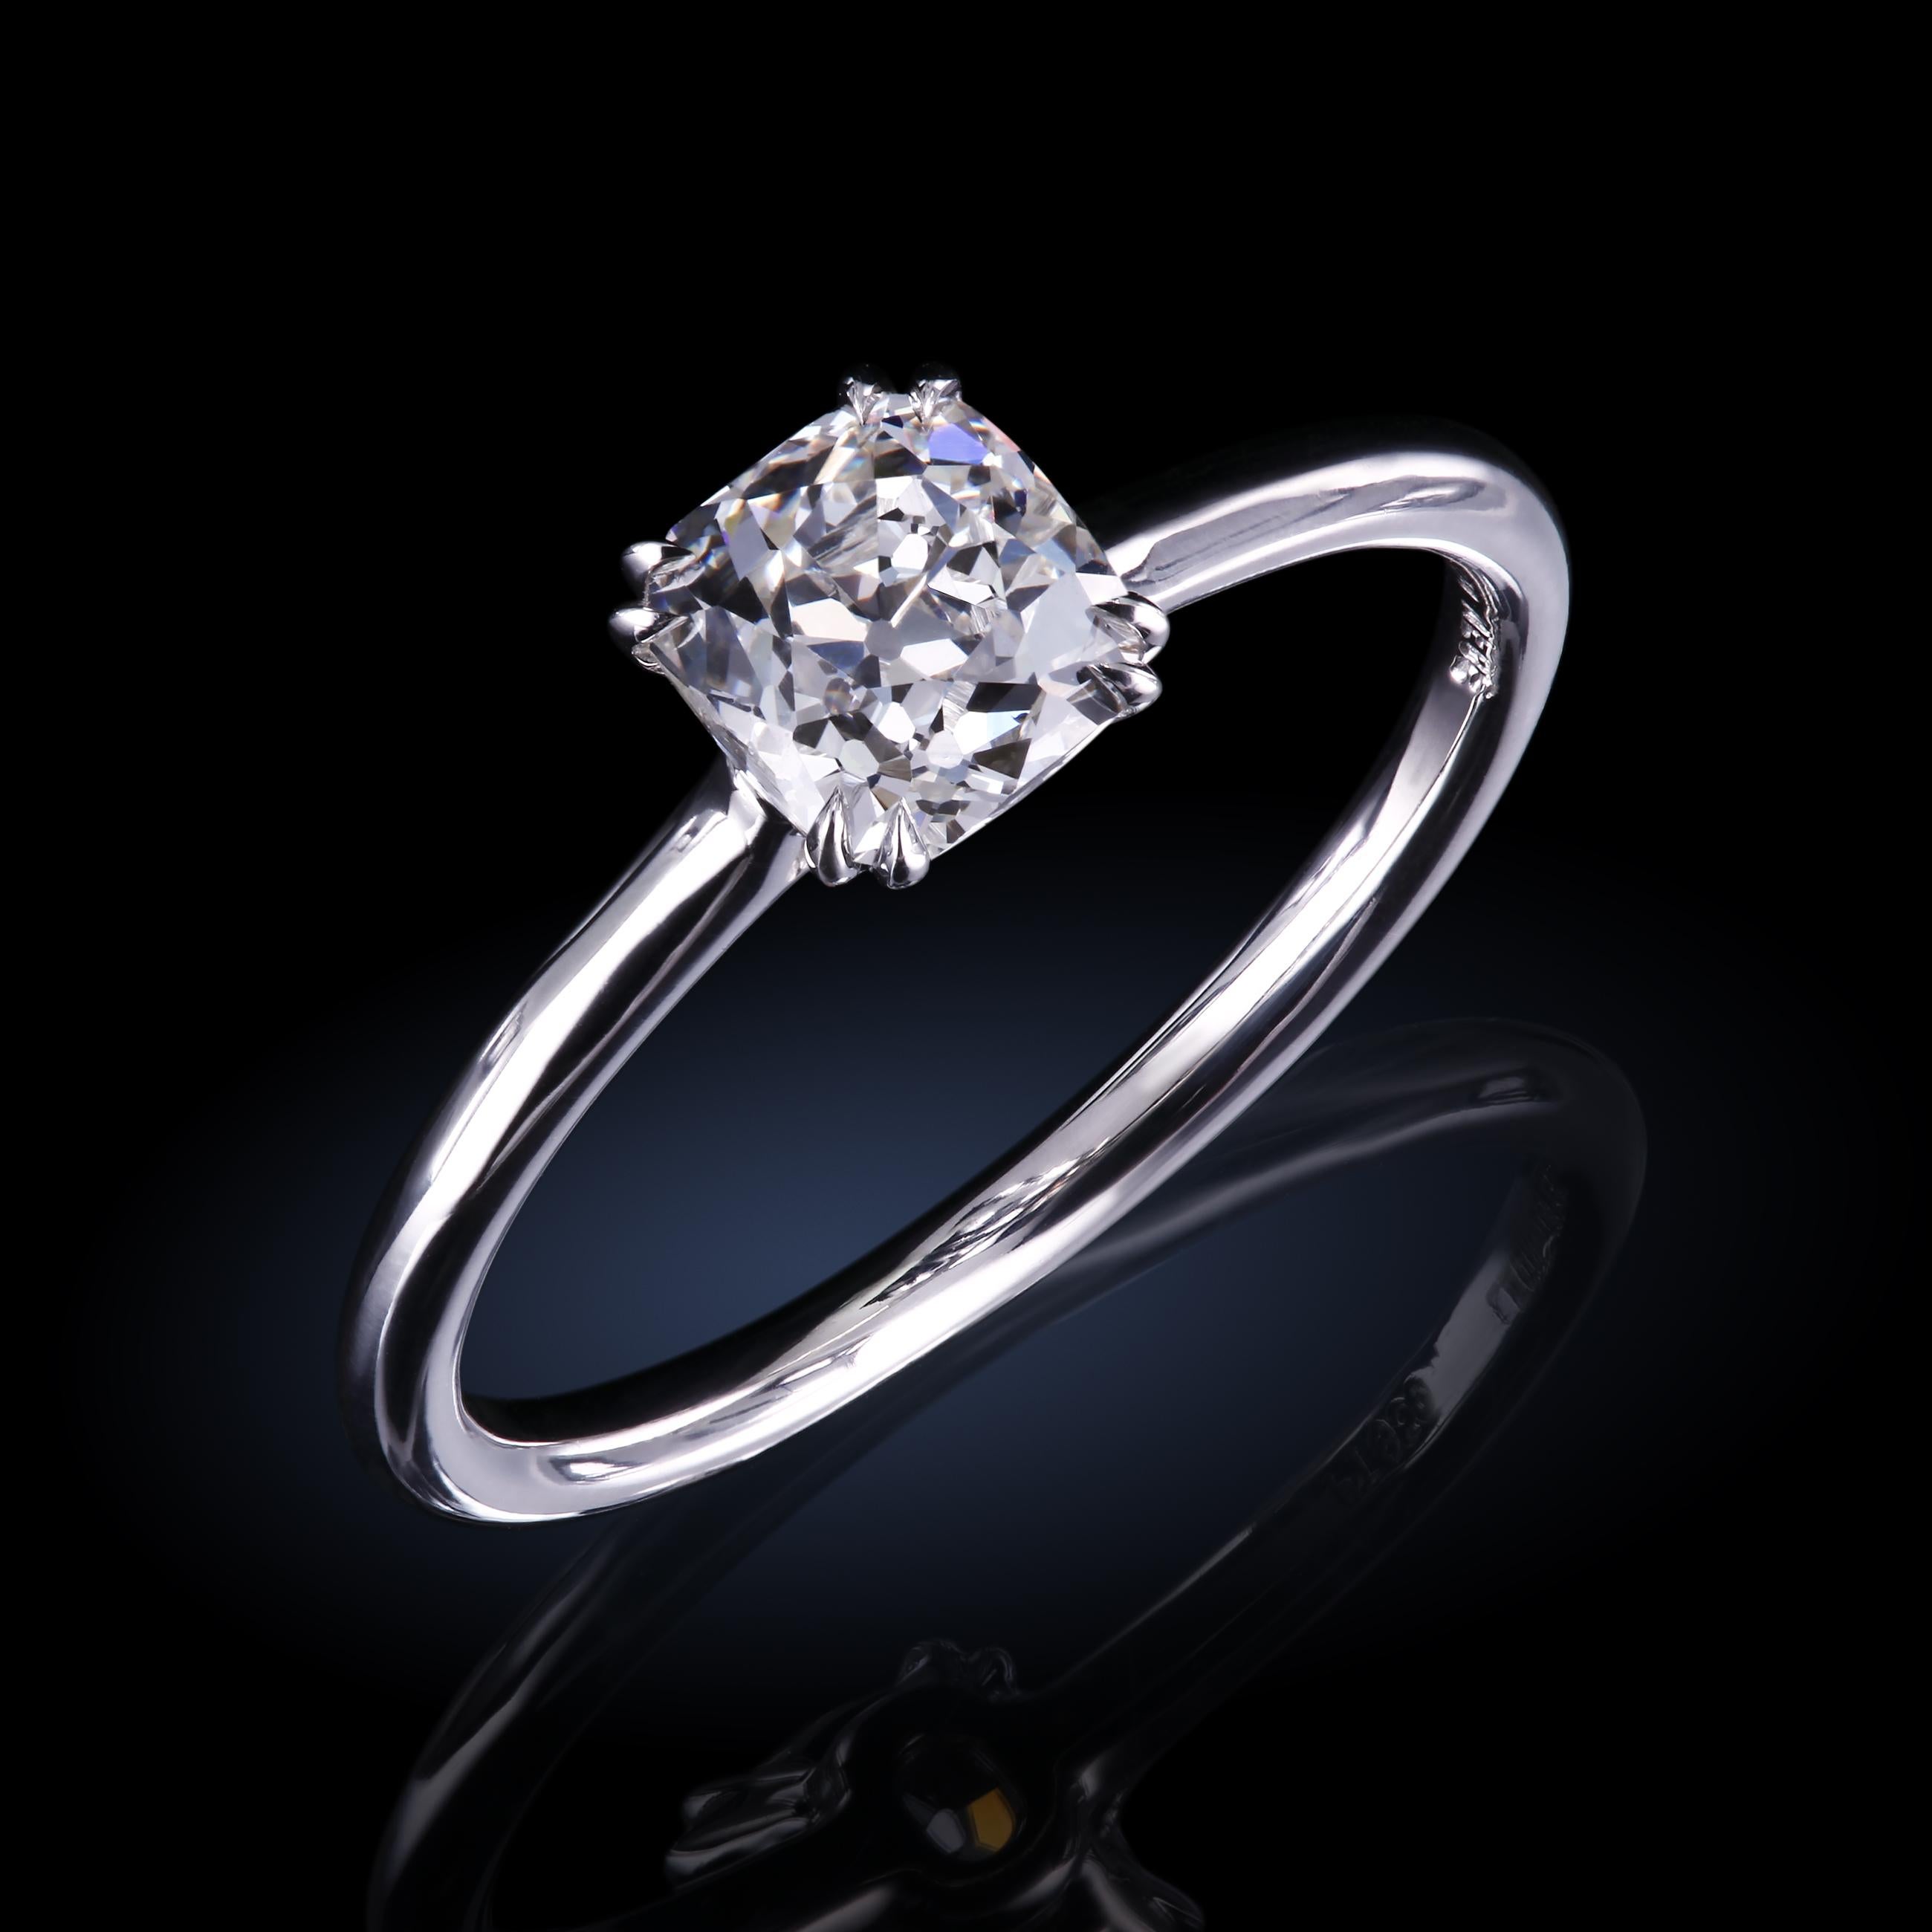 Um Erinnerungen in einen eleganten Tempel der Schönheit zu verwandeln, braucht man keinen riesigen Stein, sondern kann dies mit dem süßen Princessa™ Platin-Solitär mit einem wunderschönen 0,83-karätigen GIA I/VS1 antiken Kissen-Diamanten,